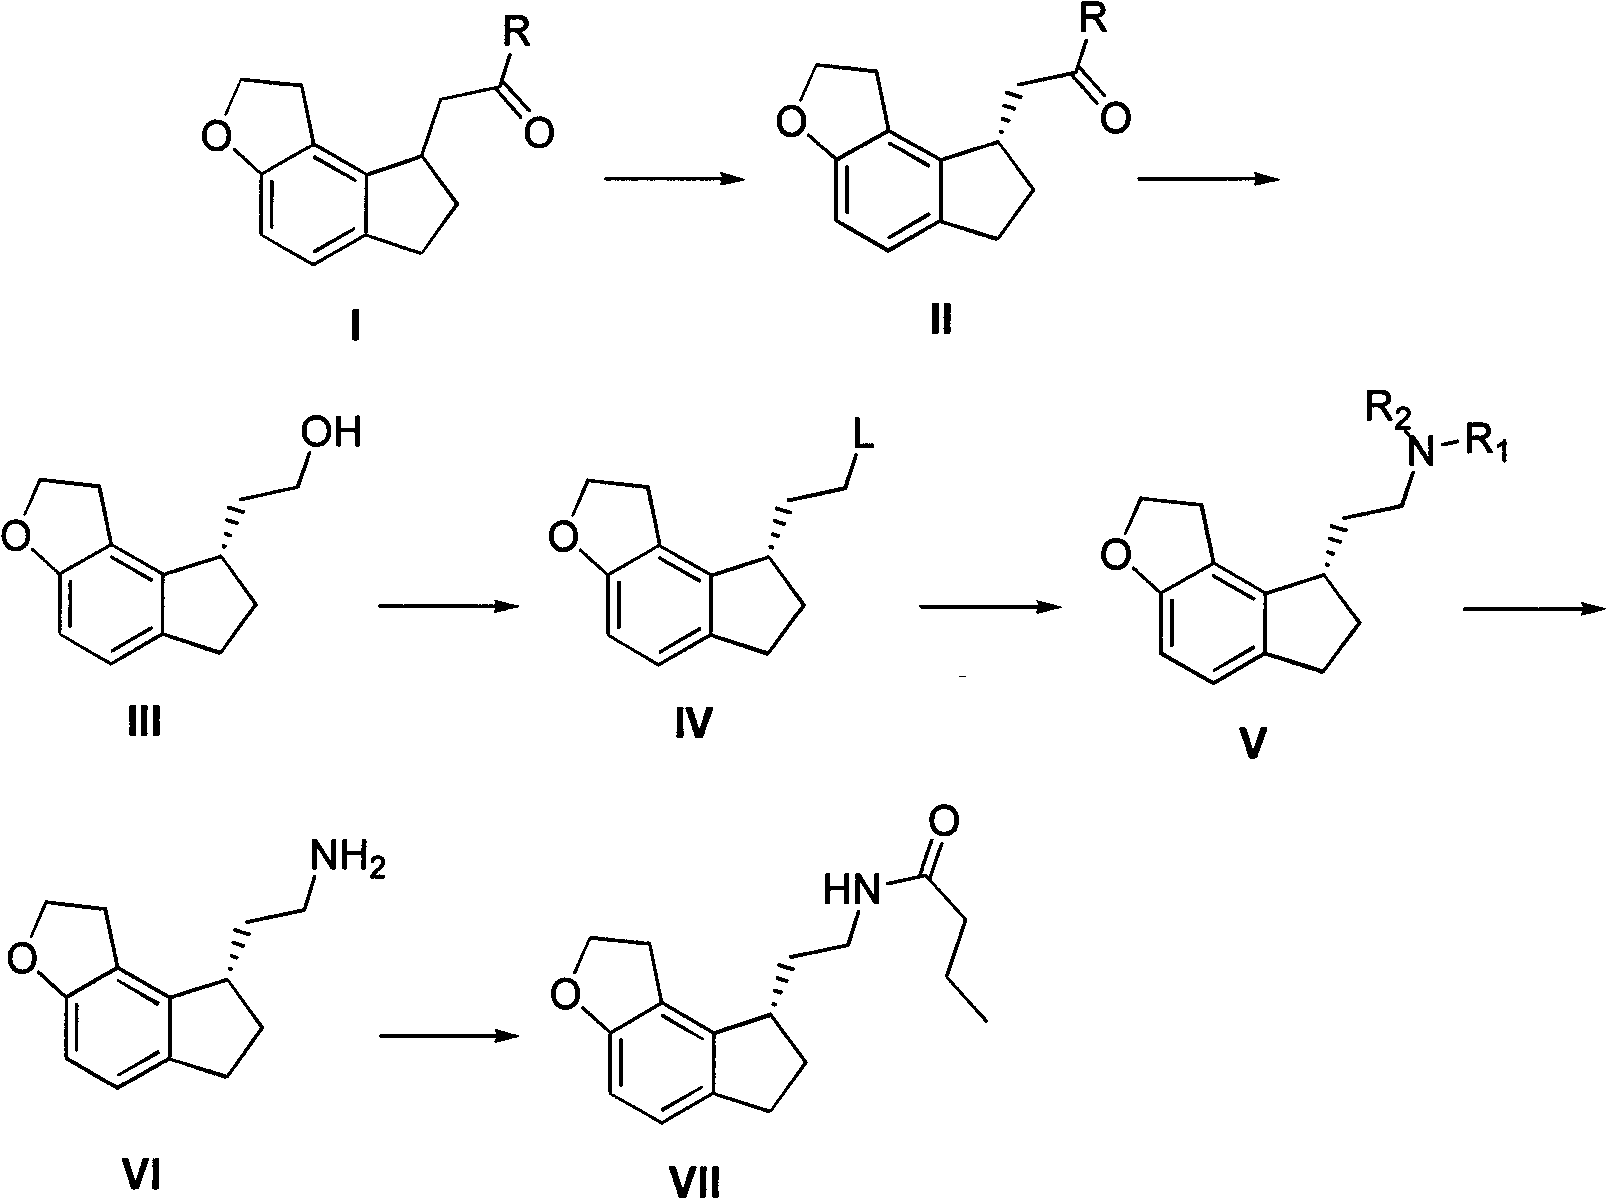 Method for synthesizing Ramelteon